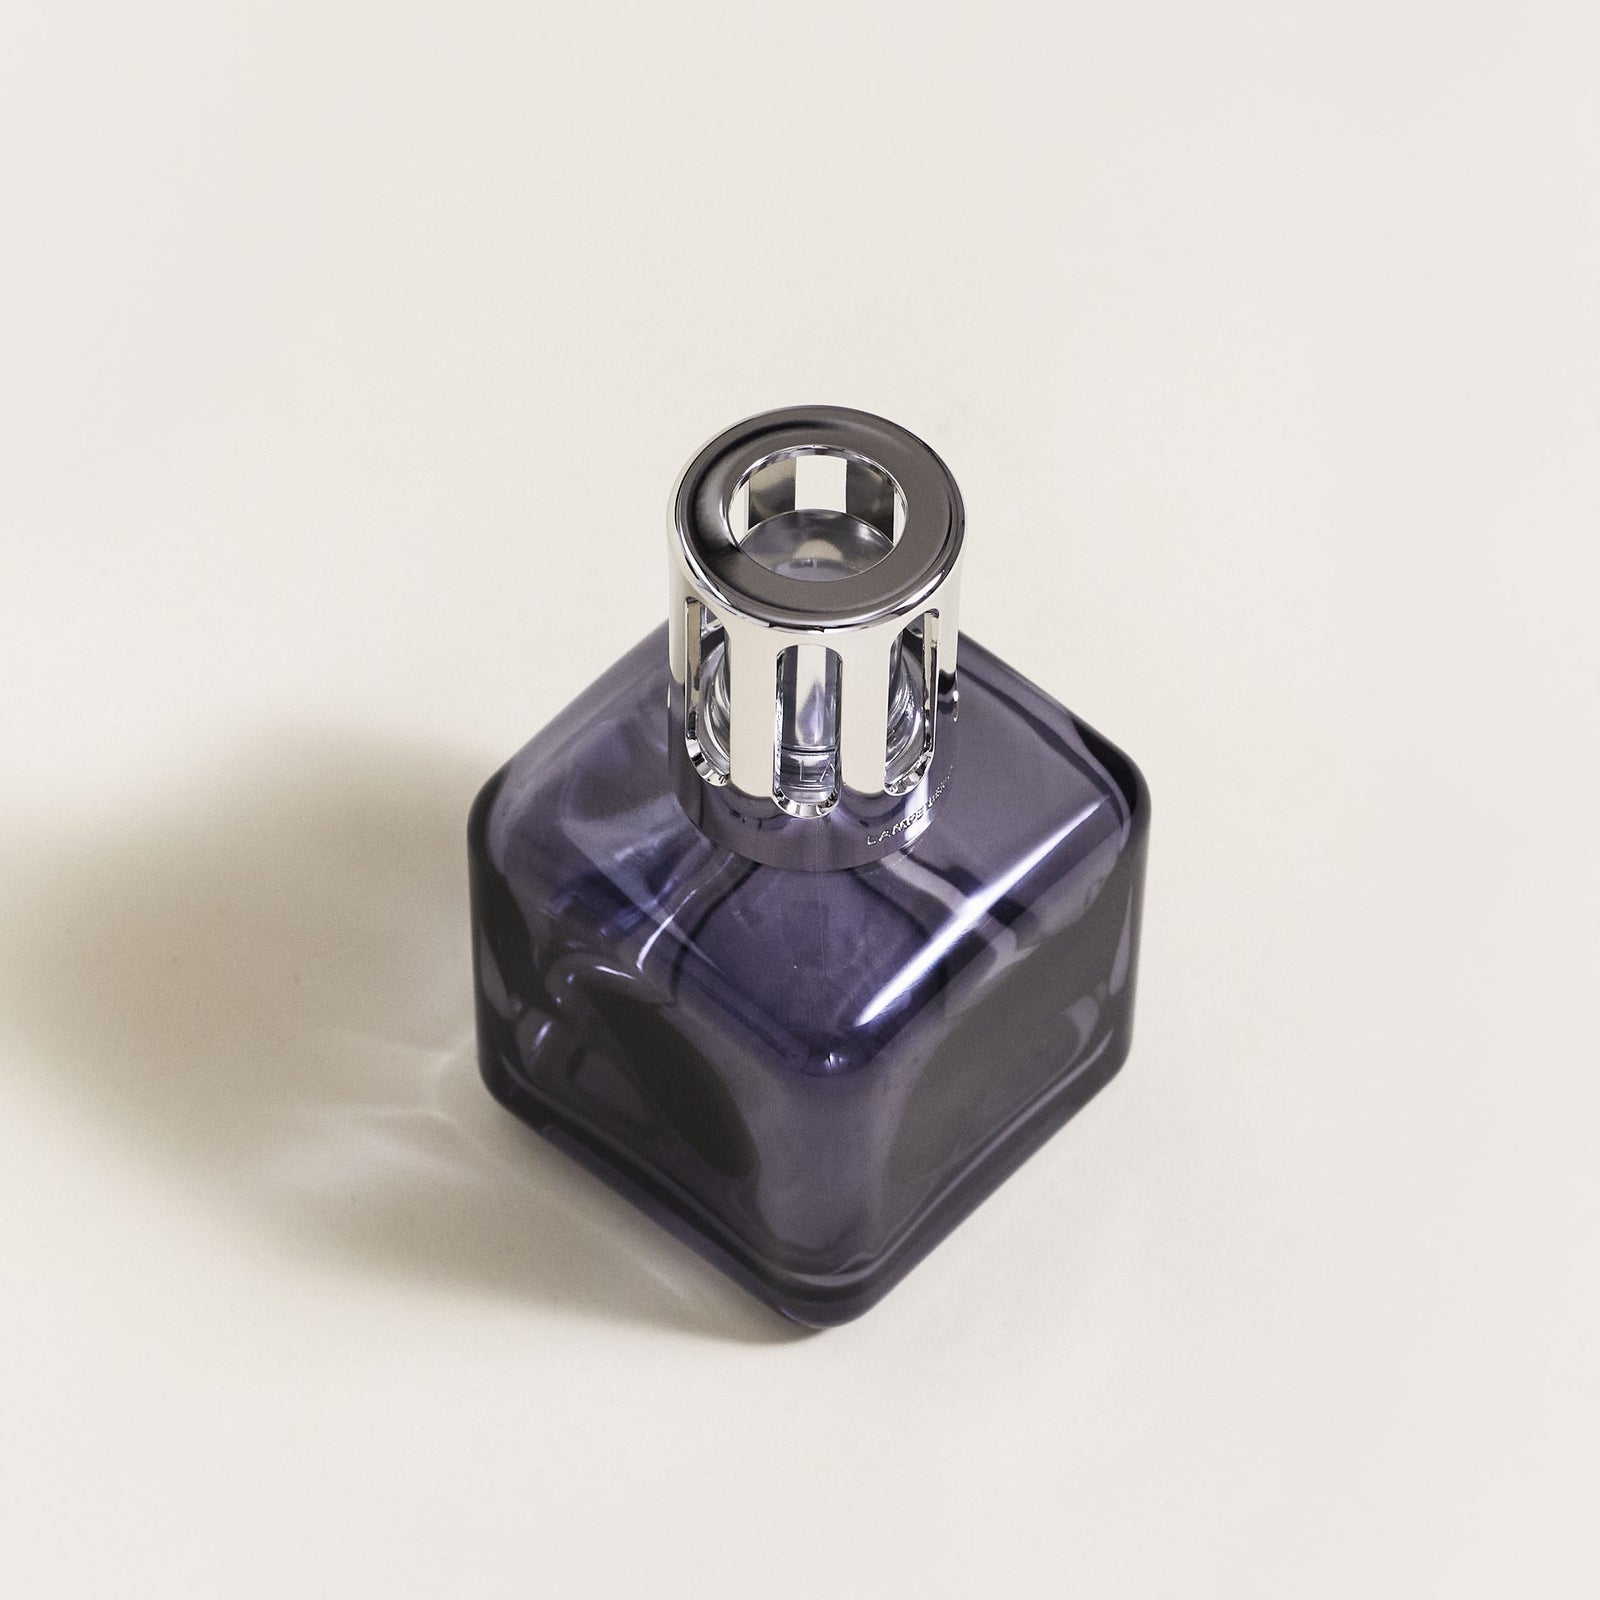 Coffret lampe Berger Glaçon Grise    - Maison Berger Paris - Parfums d'ambiance - 